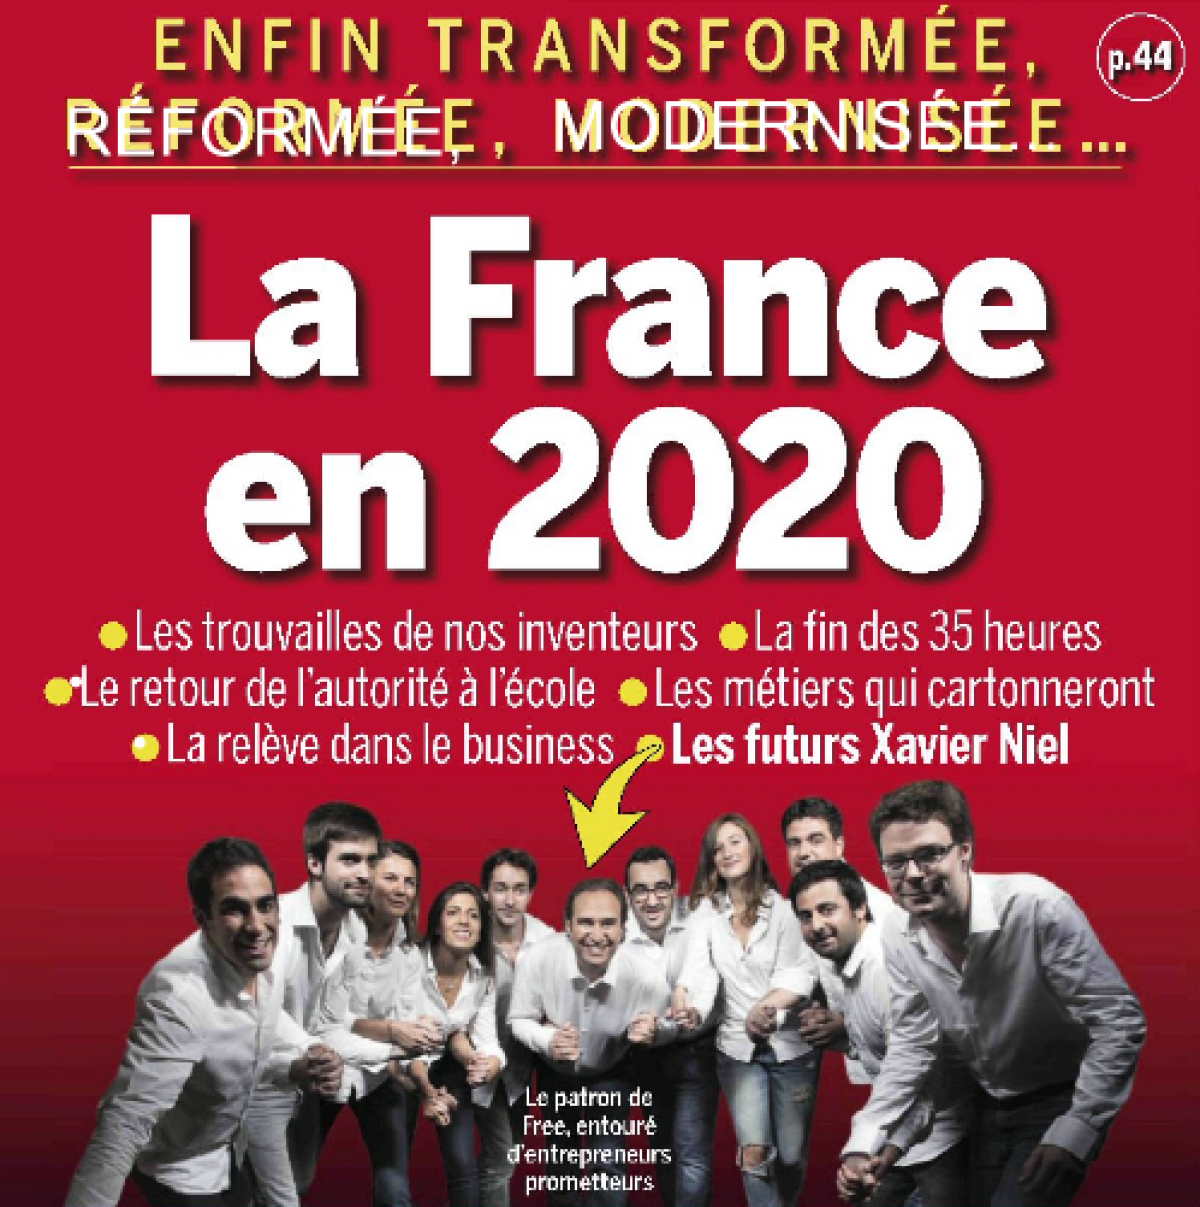 « Les futurs Xavier Niel » donnent rendez vous à «la France de 2020 »